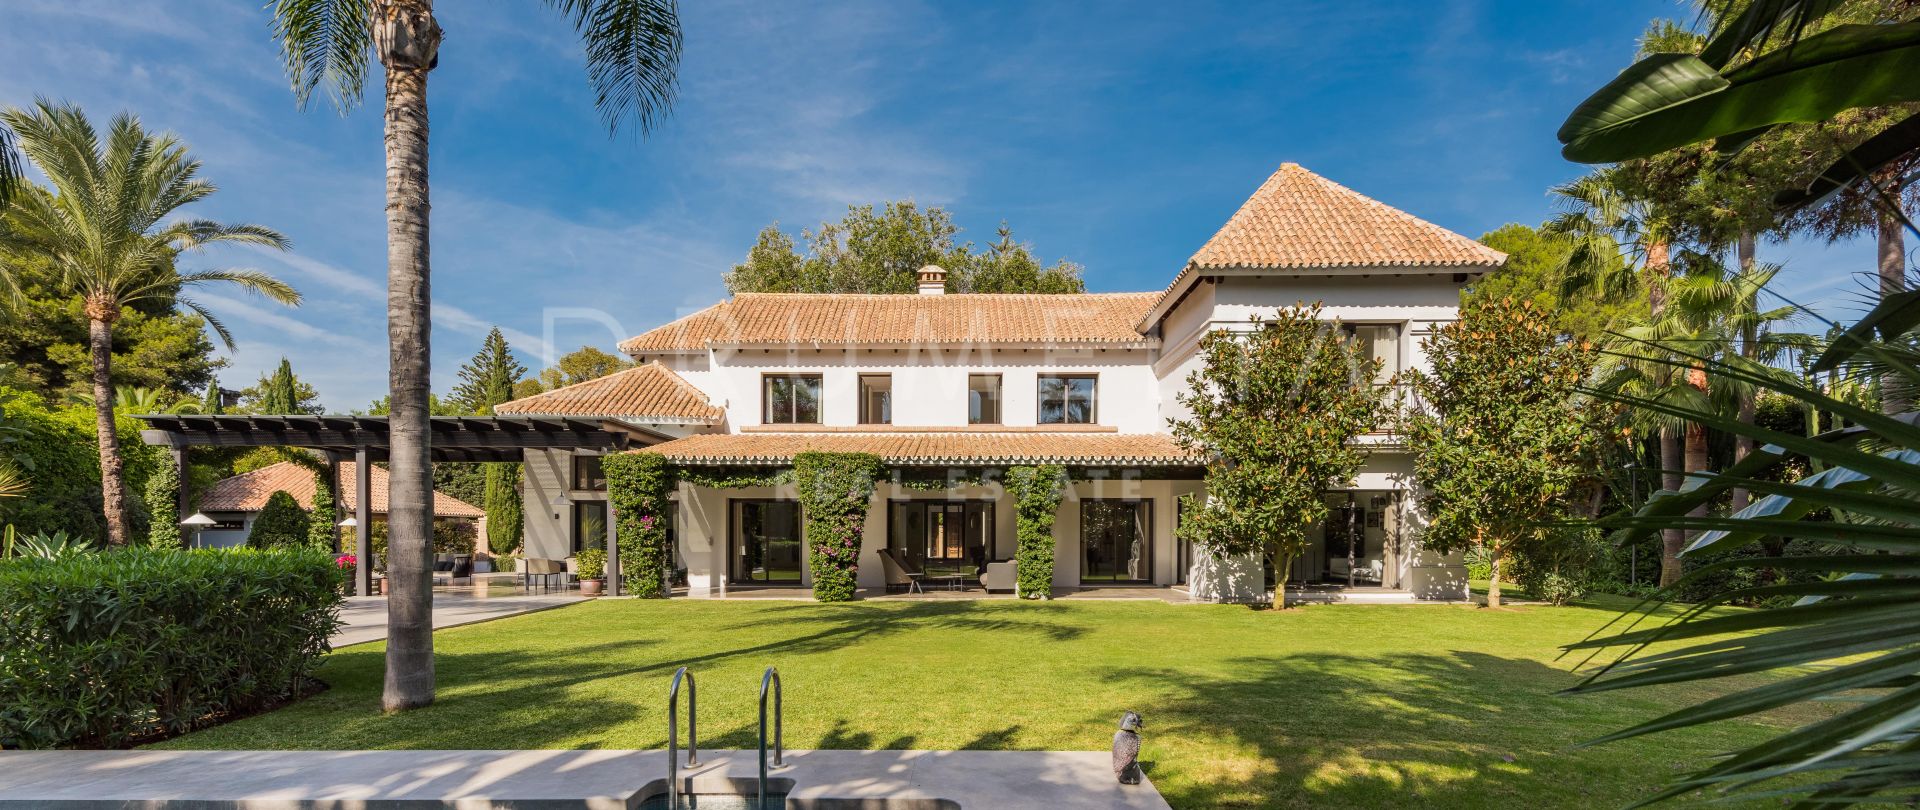 Schitterende moderne mediterrane villa, Las Mimosas, Puerto Banus, Marbella